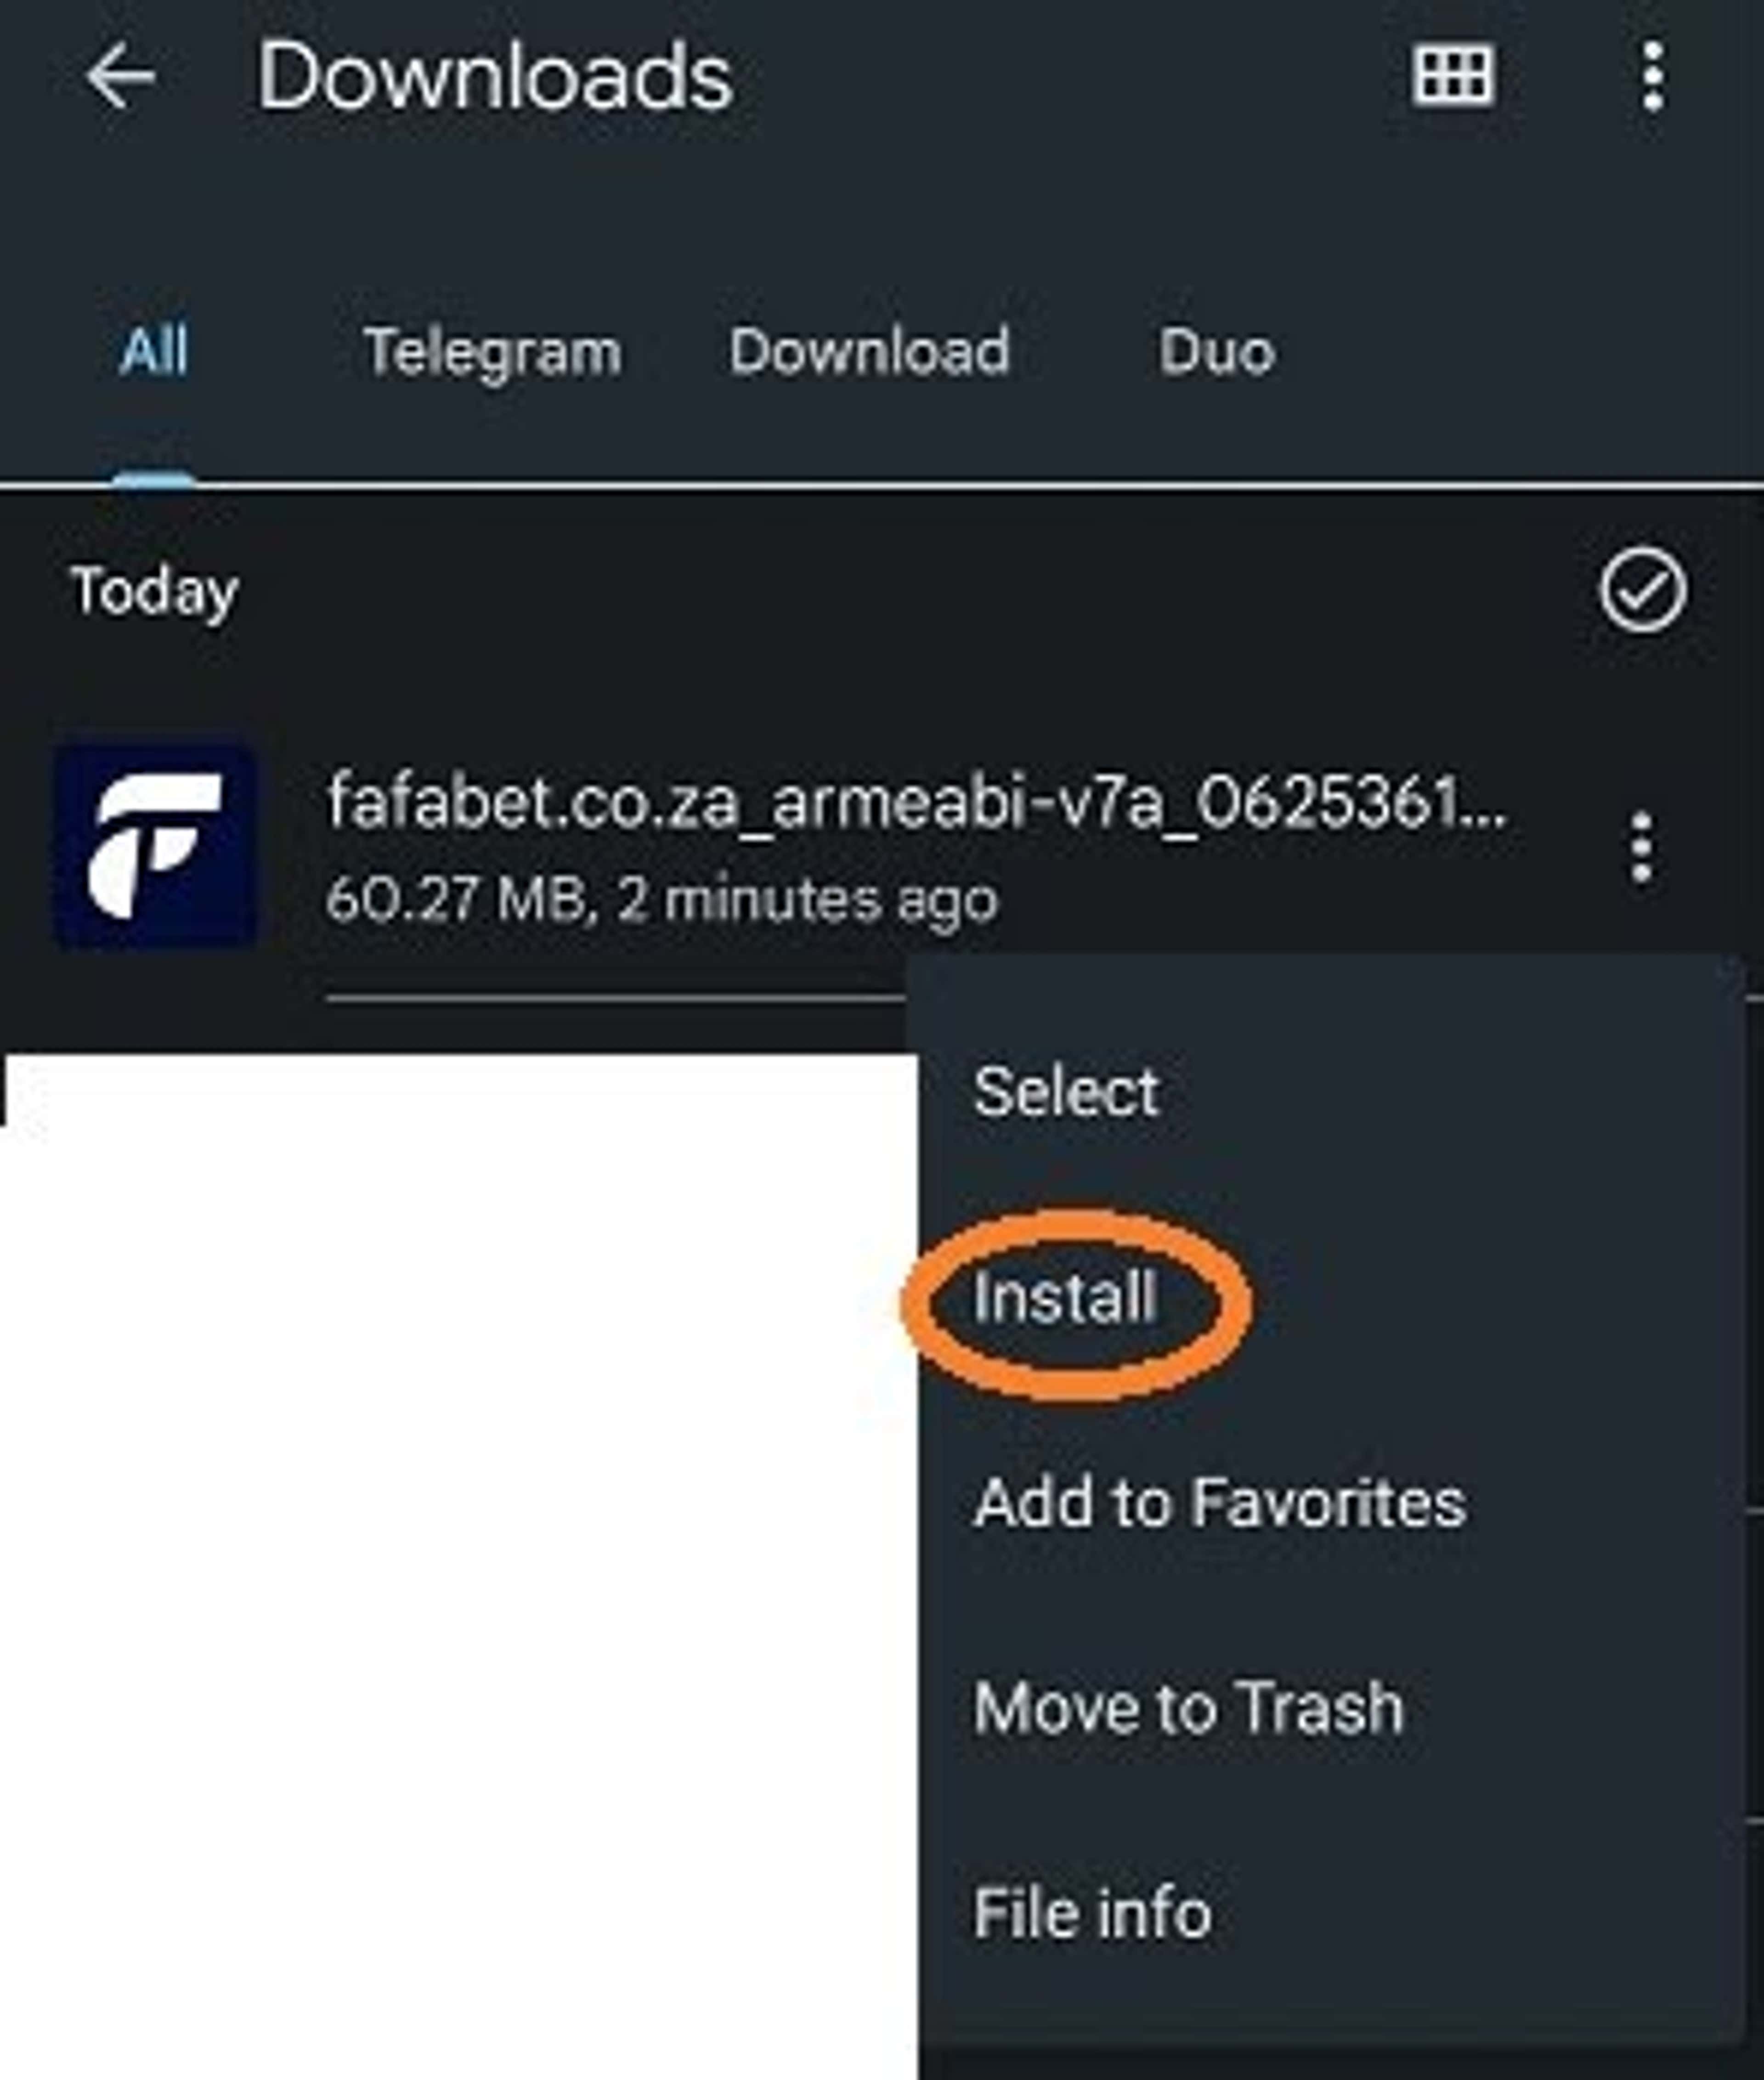 fafabet app apk download settings screenshot